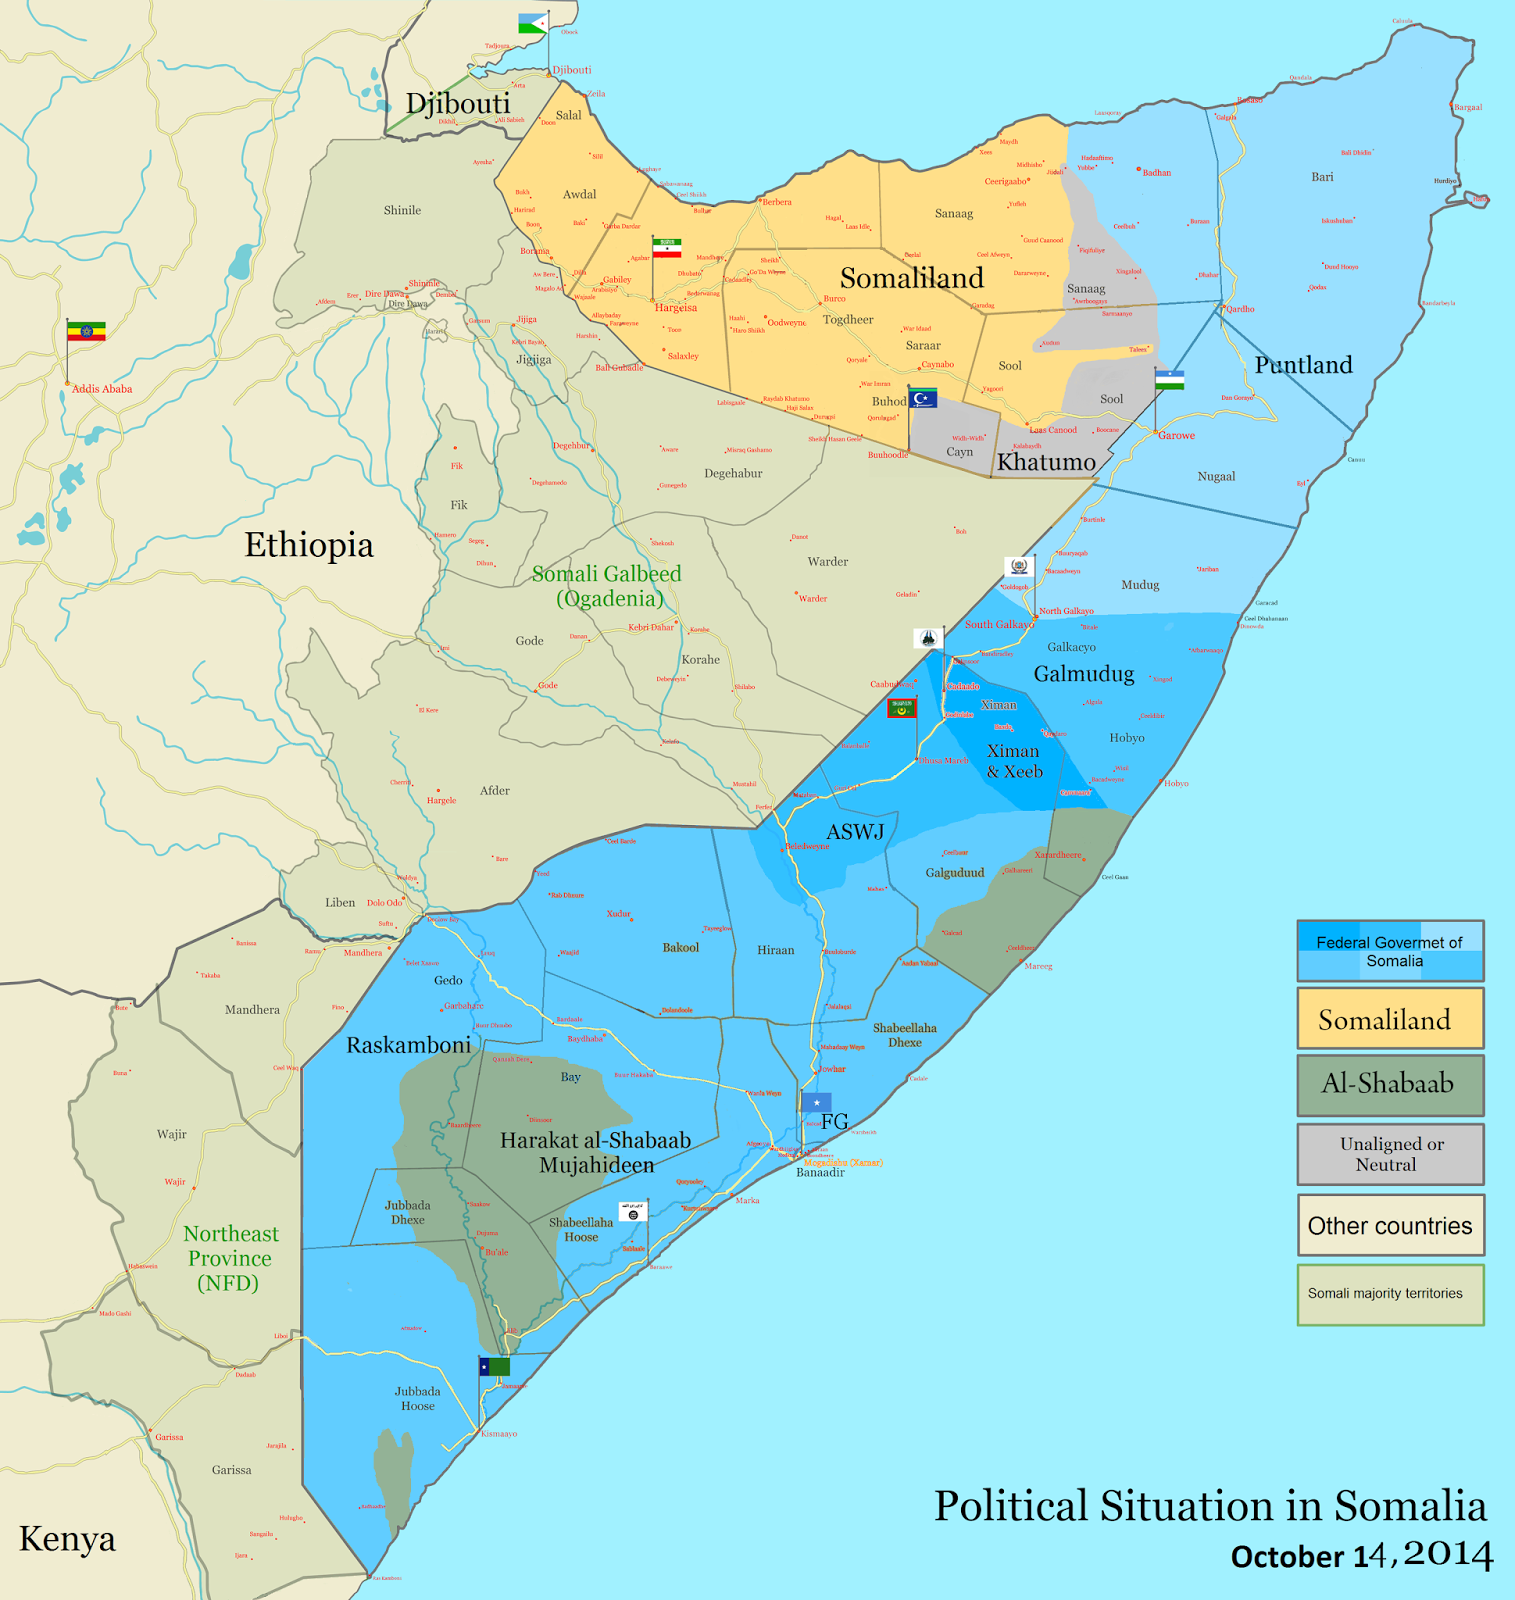 Big Blue 1840-1940: Somaliland Protectorate (British Somaliland)